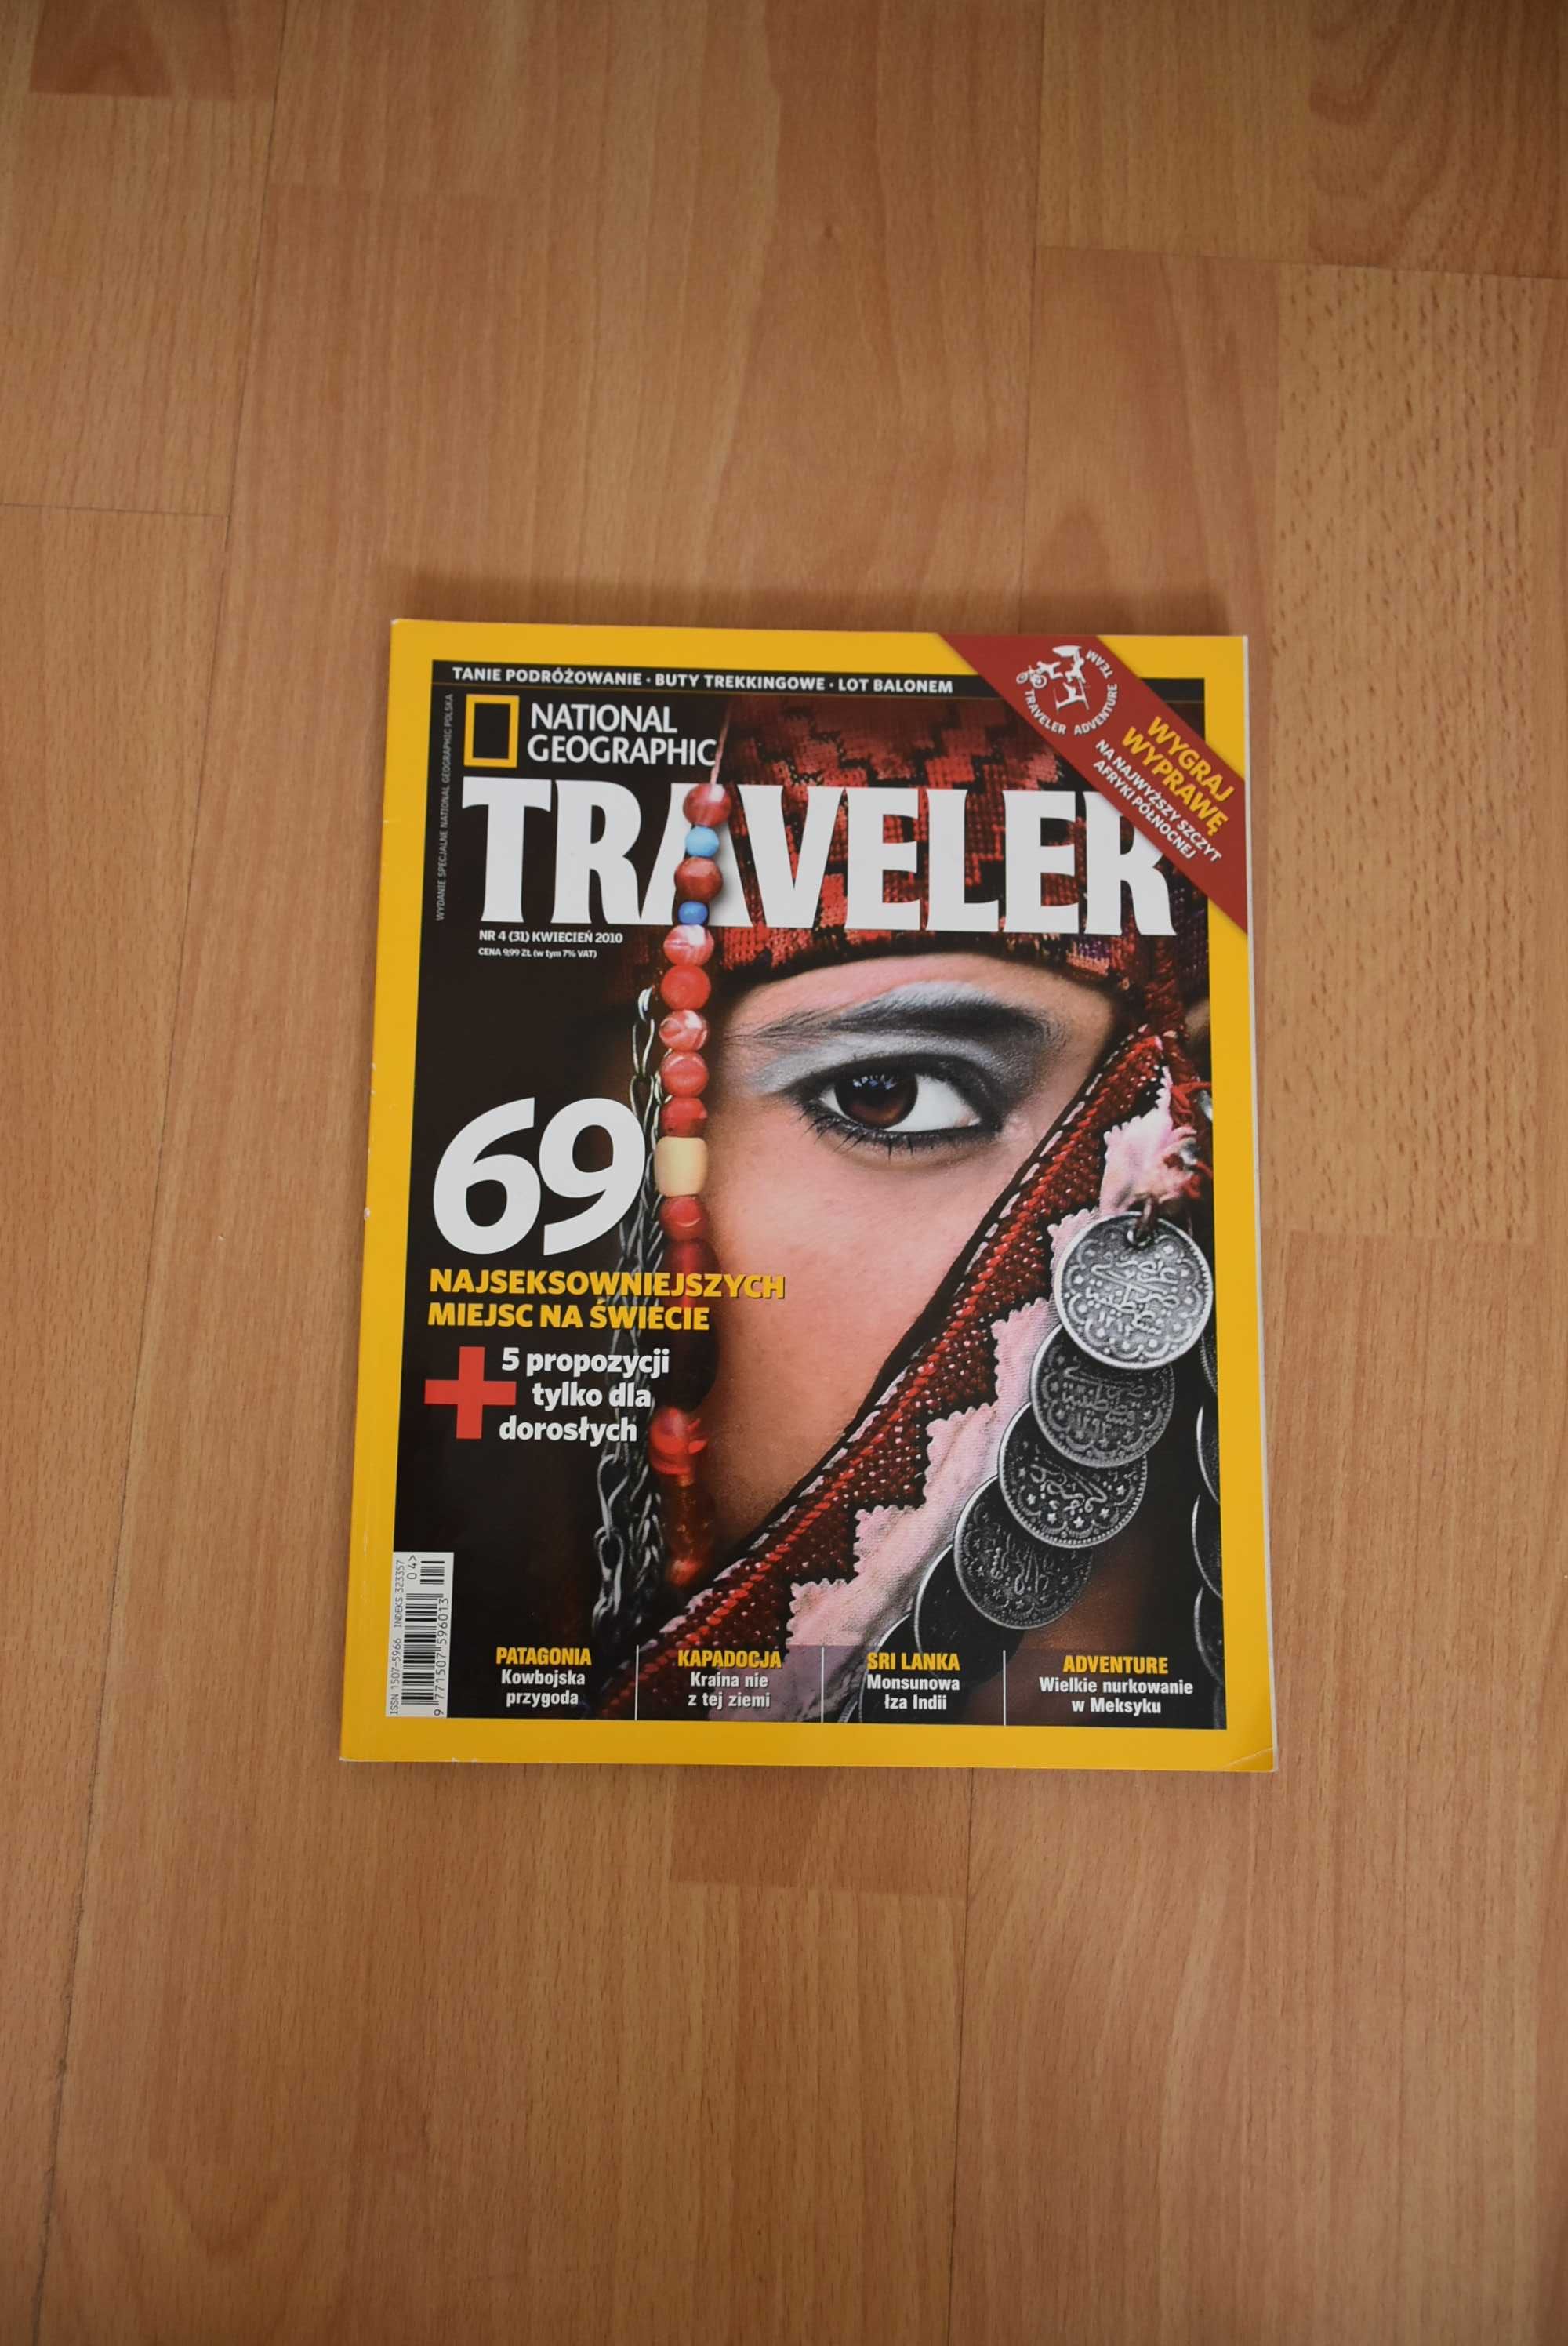 Traveler (3 szt)- 6/7.2009, 4 i 5.2010 tanie podróże, dzieci w podróży